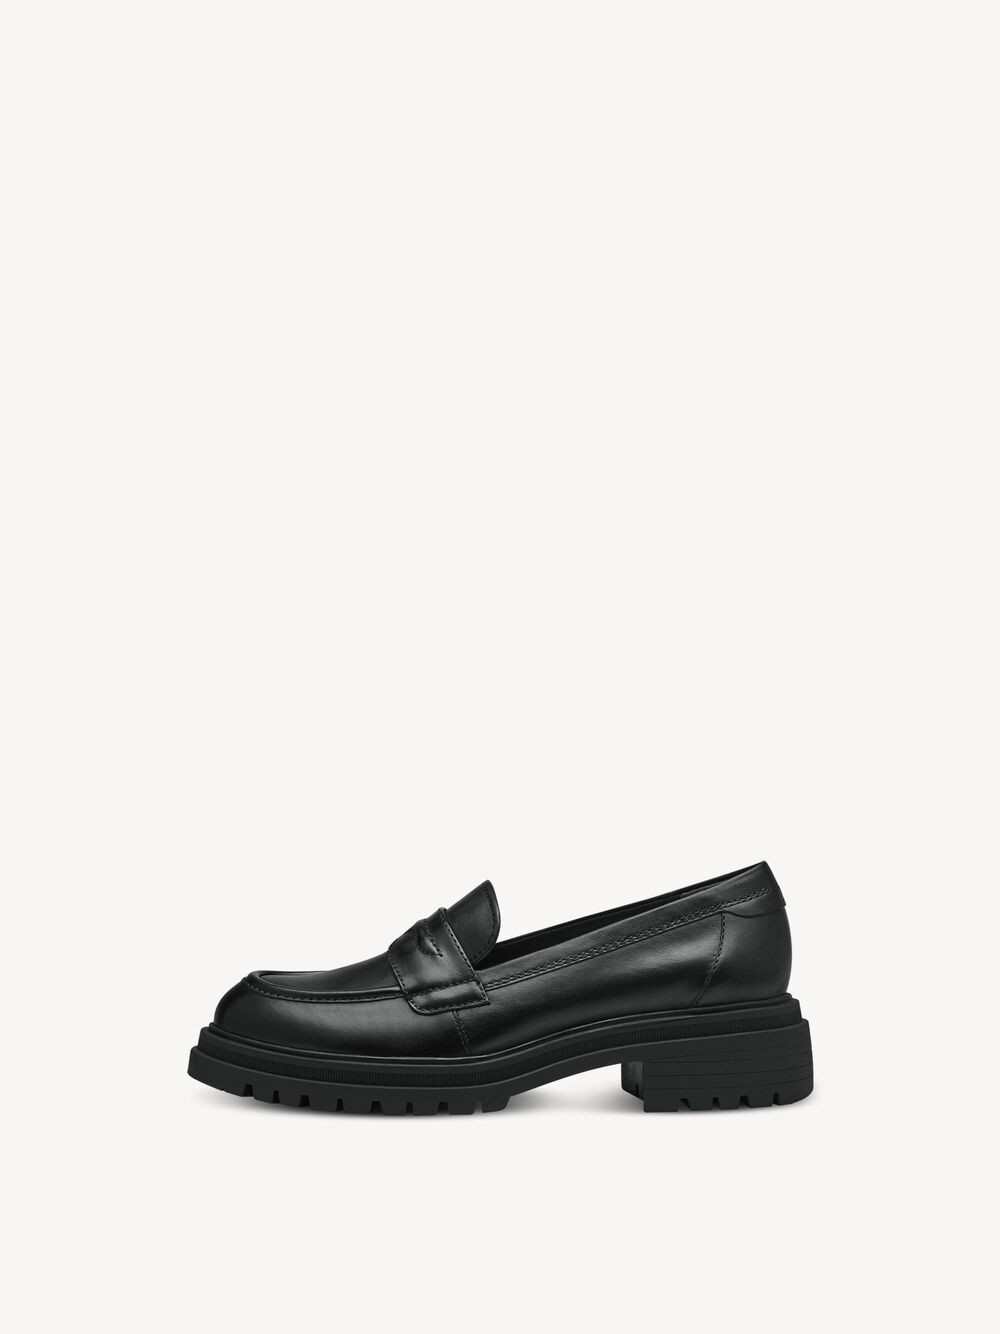 Leren Instappers - zwart 1-24309-41-003: Tamaris Lage schoenen ...